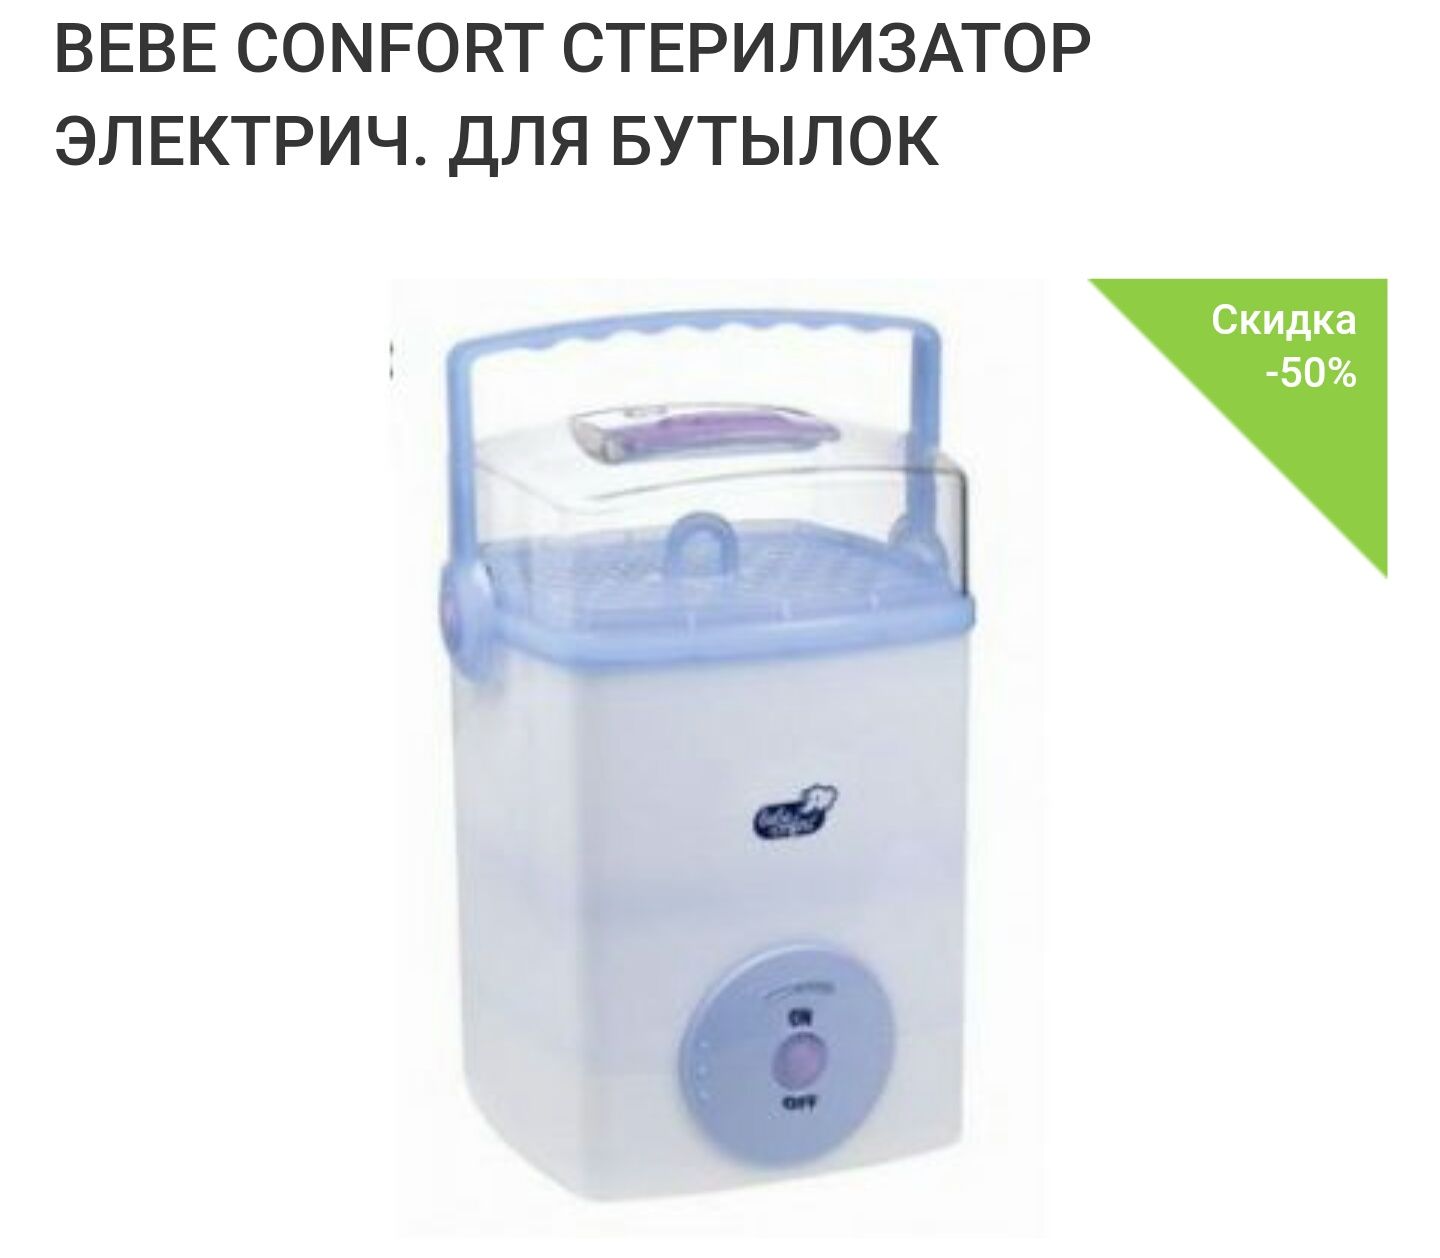 Стерилизатор для бутылочек Bebe Confort.